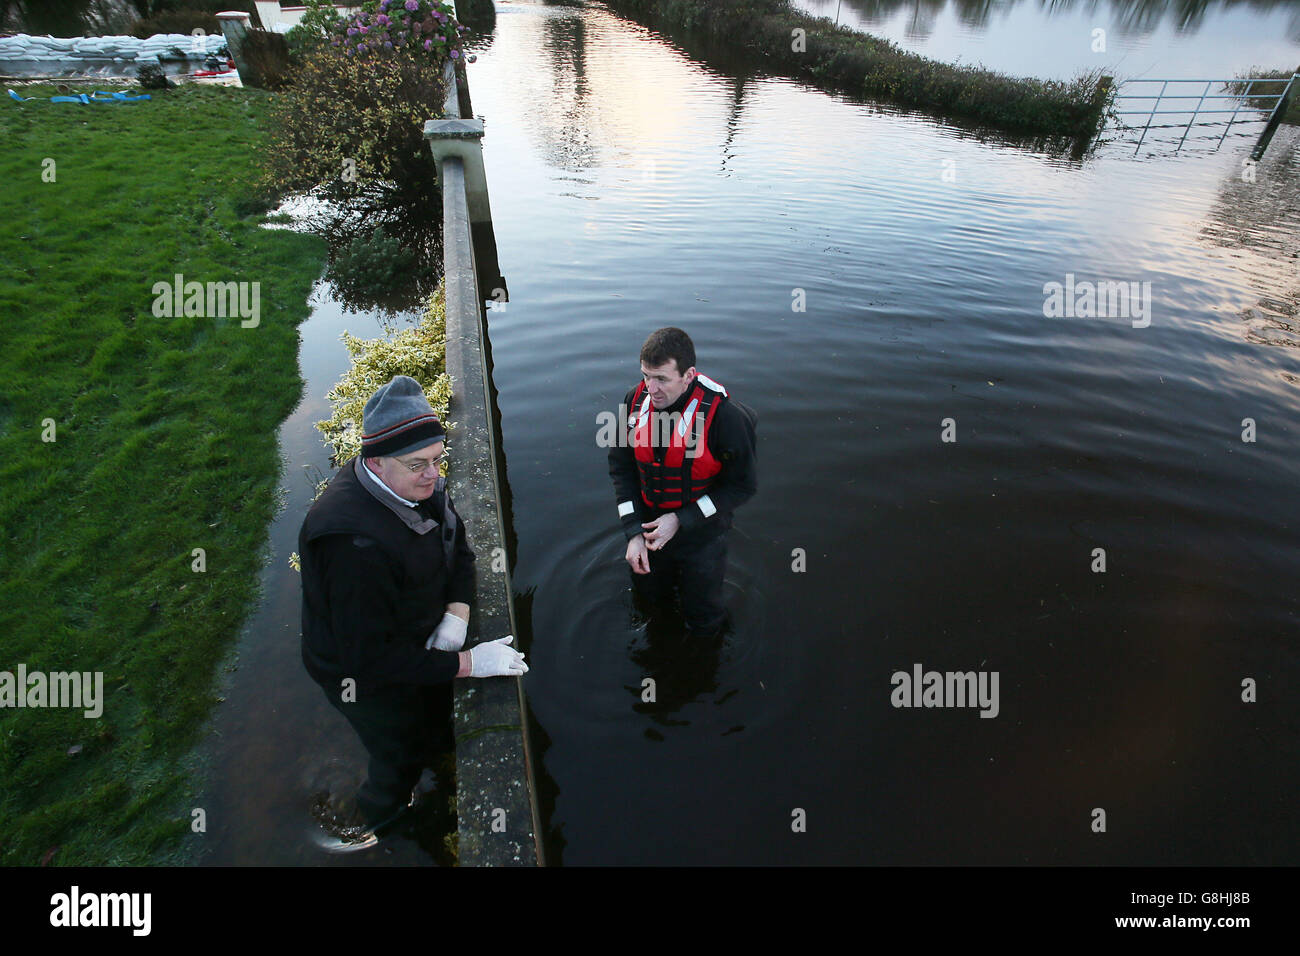 L'homme local John Mason (à gauche) parle à Aiden Webster, des ingénieurs de l'armée irlandaise près de Springfield, comté de Clare, car les inondations vont s'aggraver au cours du week-end. Banque D'Images